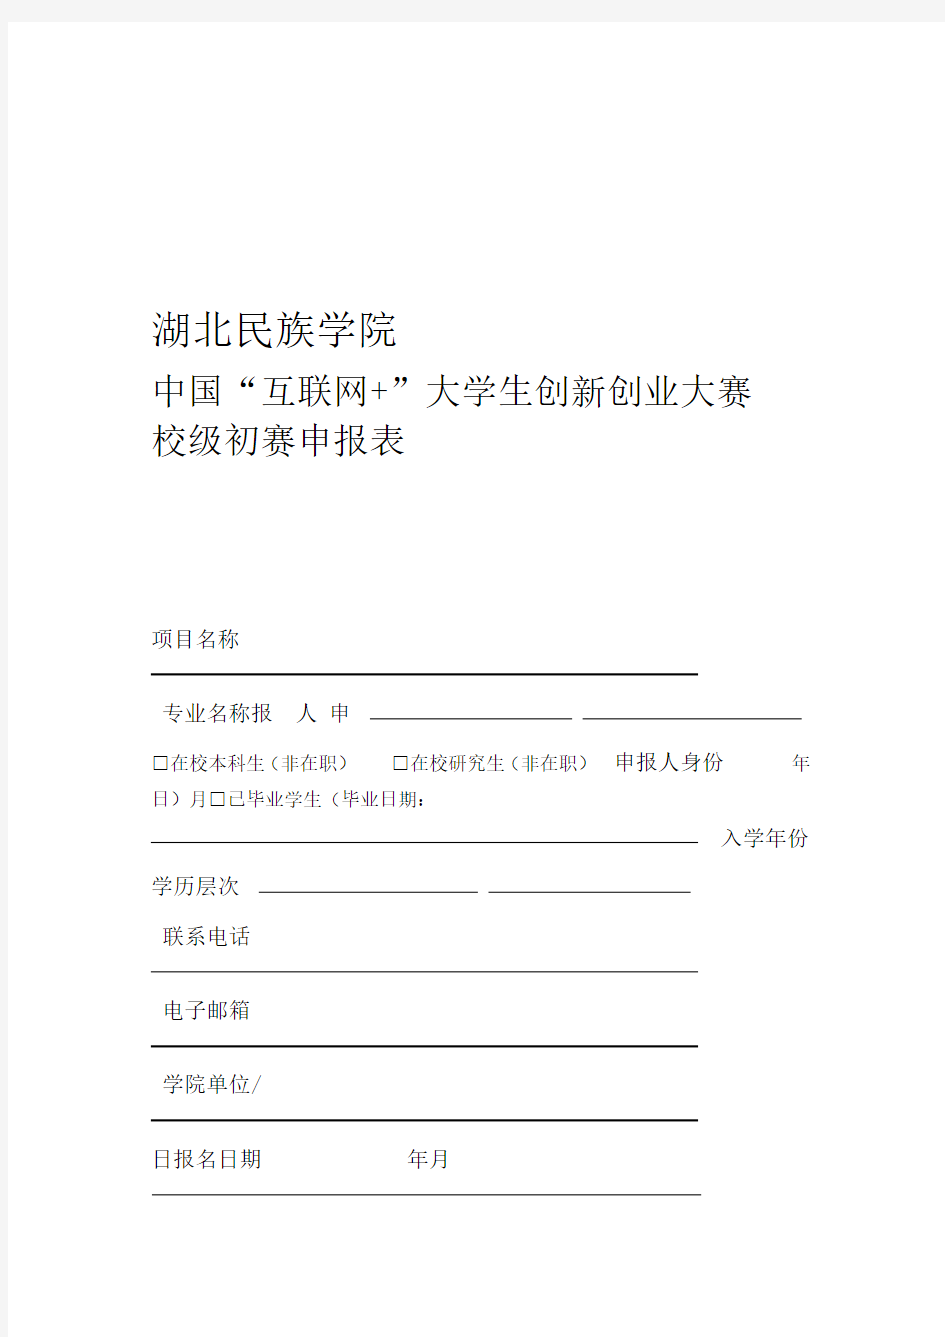 中国互联网大学生创新创业大赛申报表